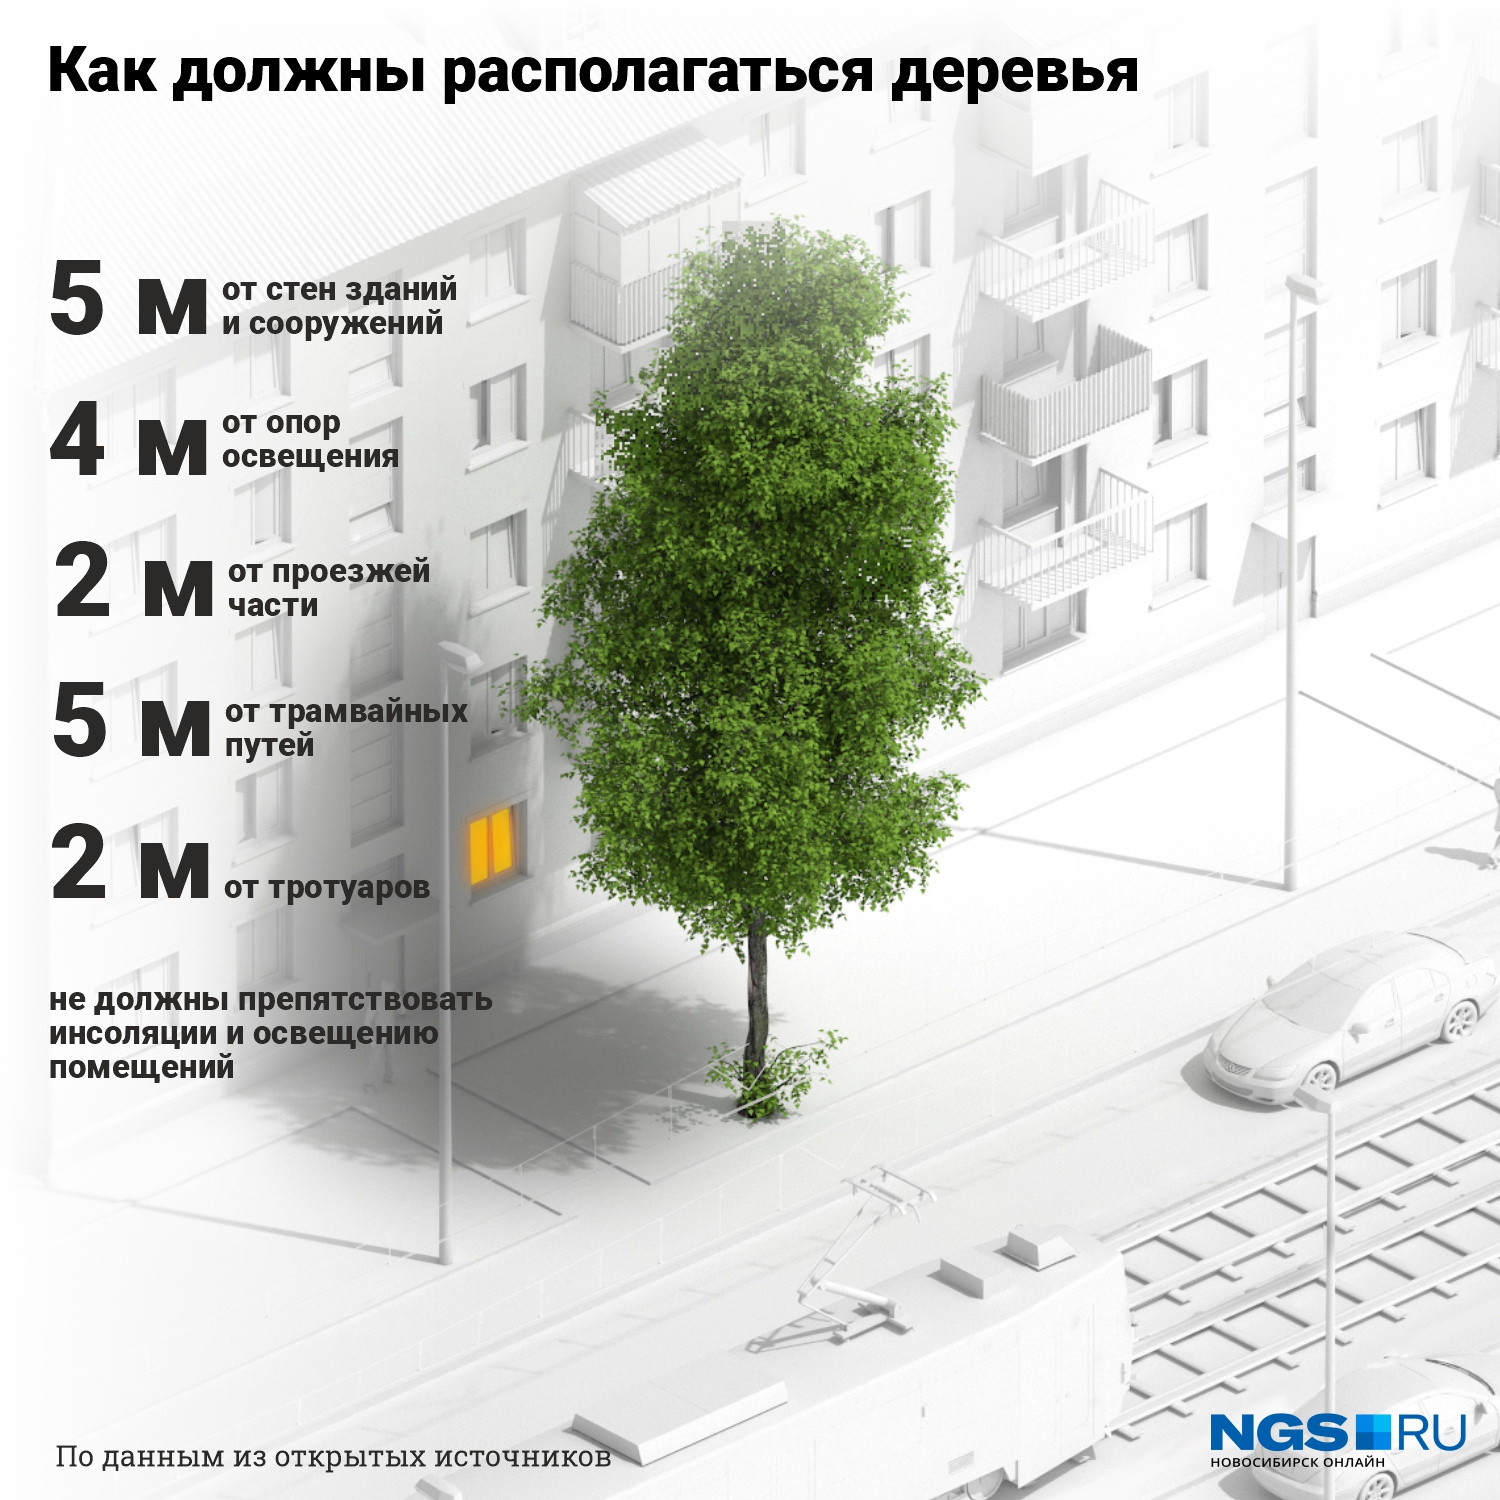 А вот как должны располагаться деревья на придомовой территории.